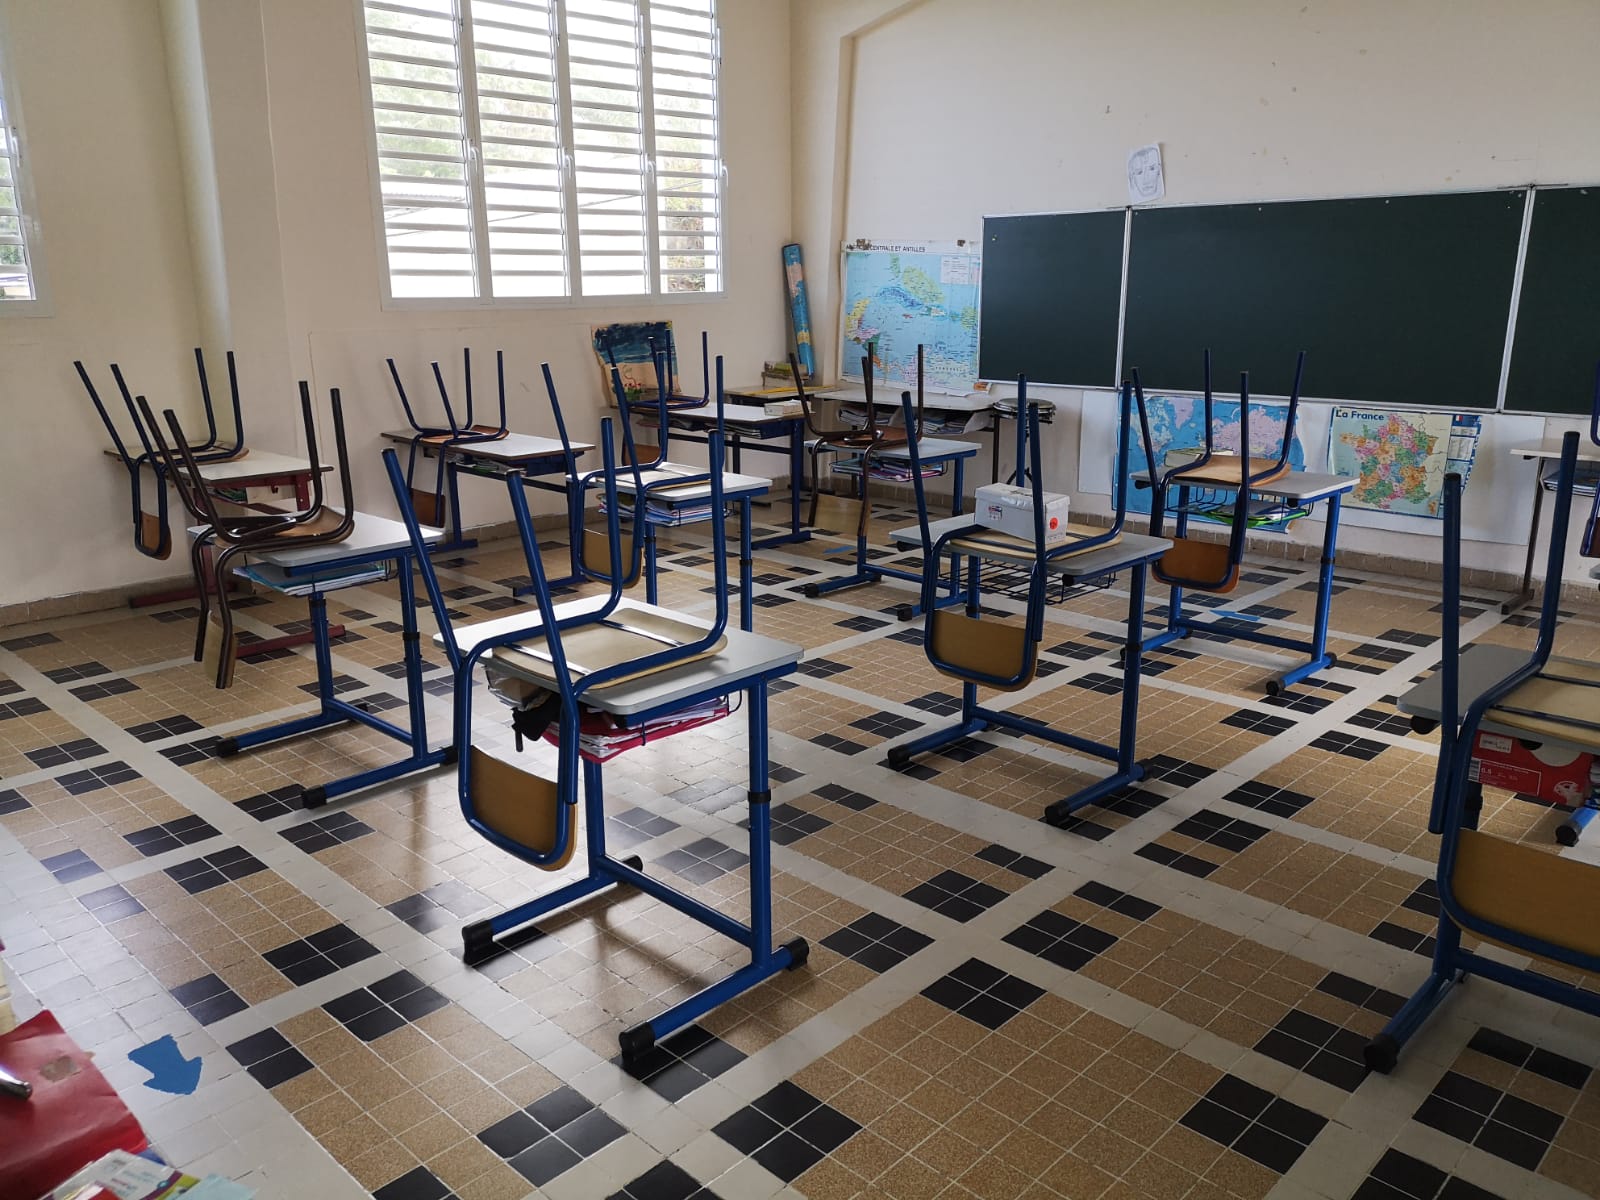     Les parents d'élèves se mobilisent devant des écoles primaires de l'île

